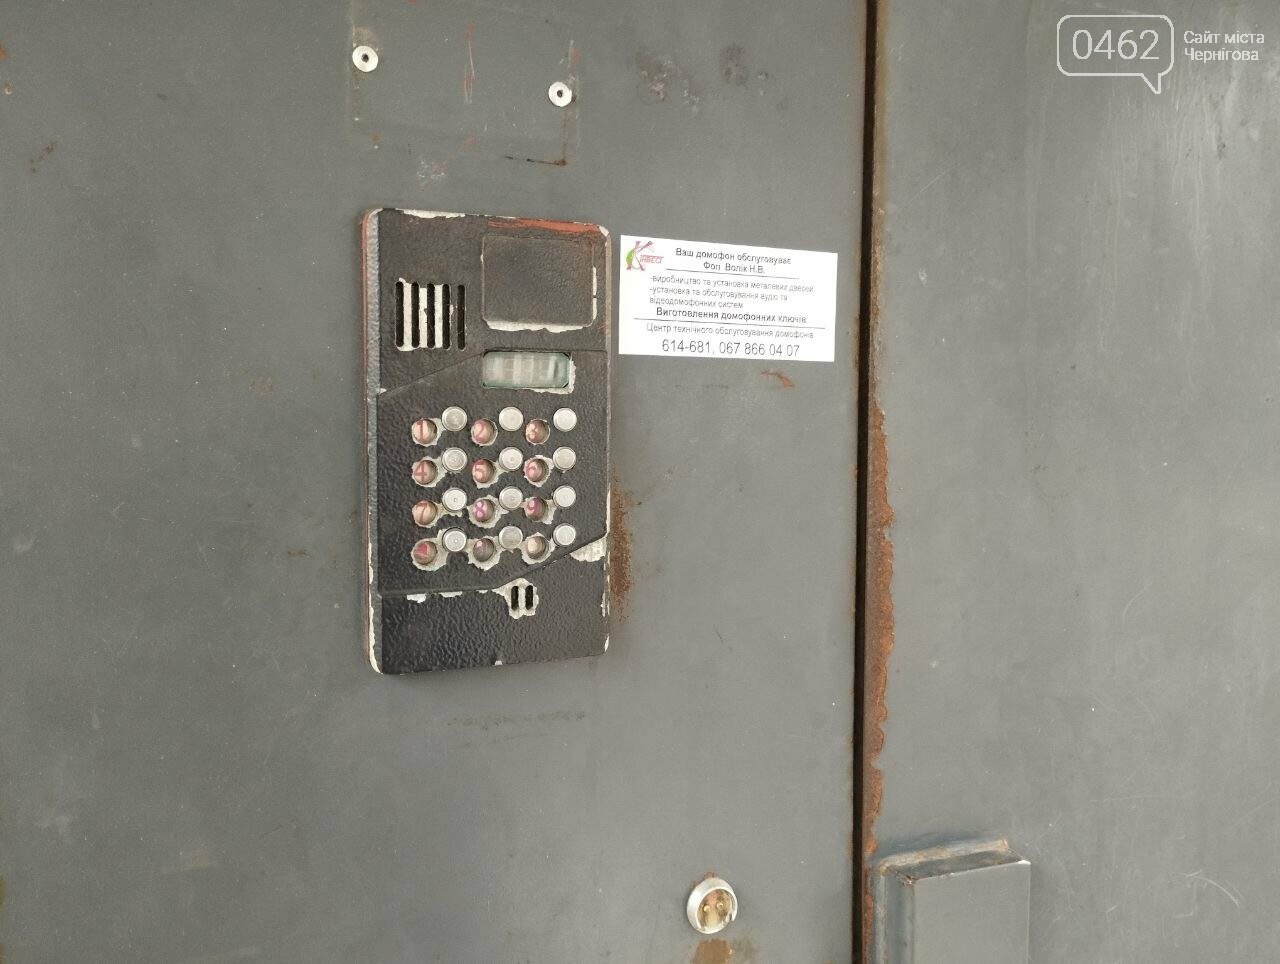 Ще нещодавно домофони у Чернігові не працювали через відключення електроенергії